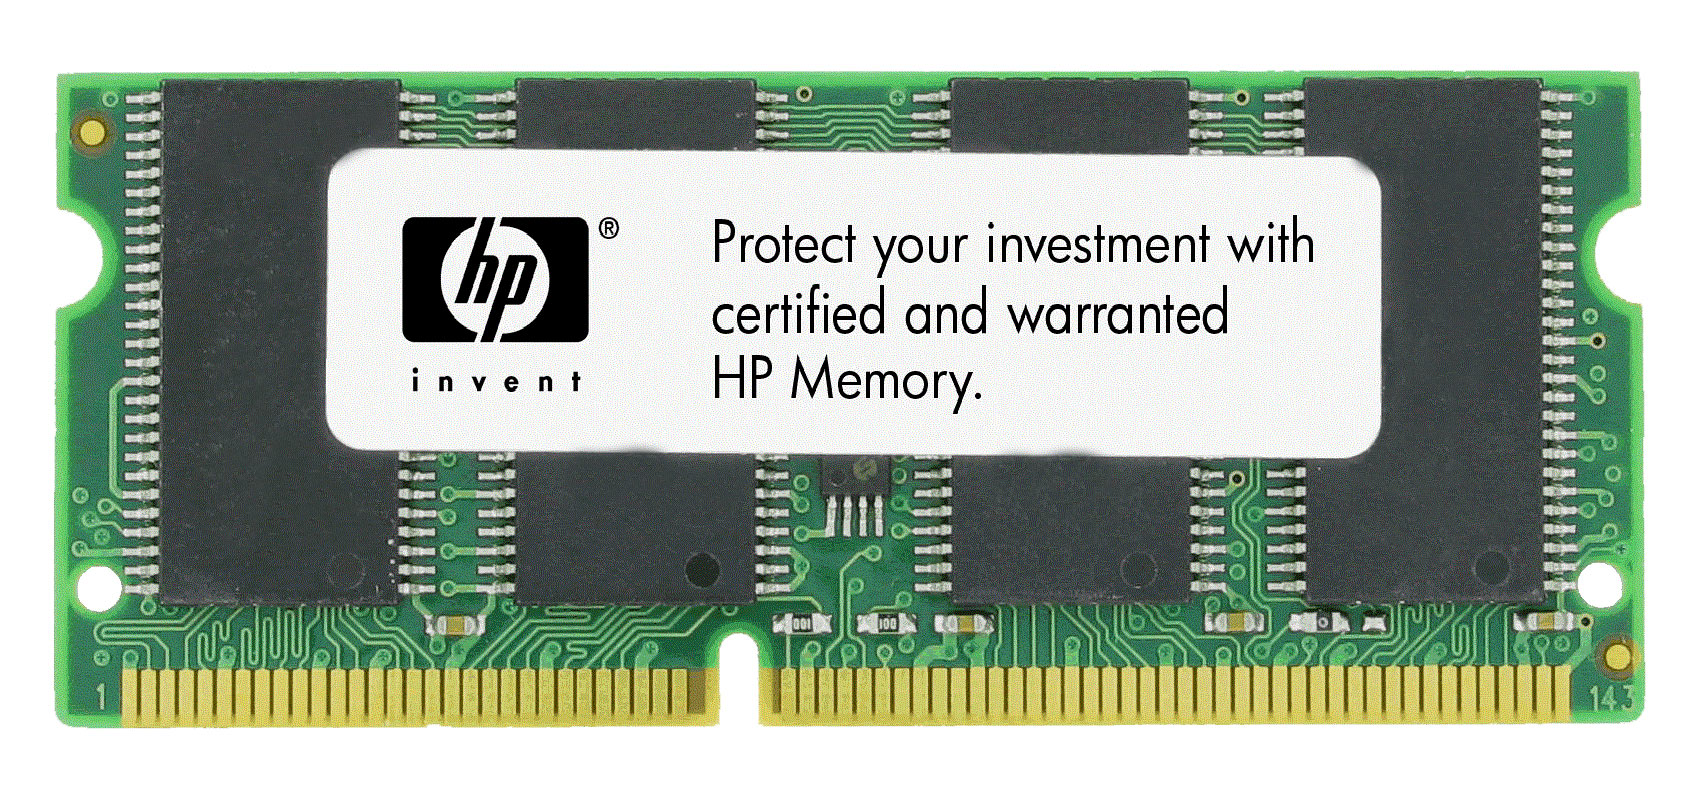 CB423A HP 256MB PC2-4200 DDR2-533MHz non-ECC Unbuffered CL4 144-Pin DIMM Memory Module for LaserJet P2015 / P3005 Series Printer